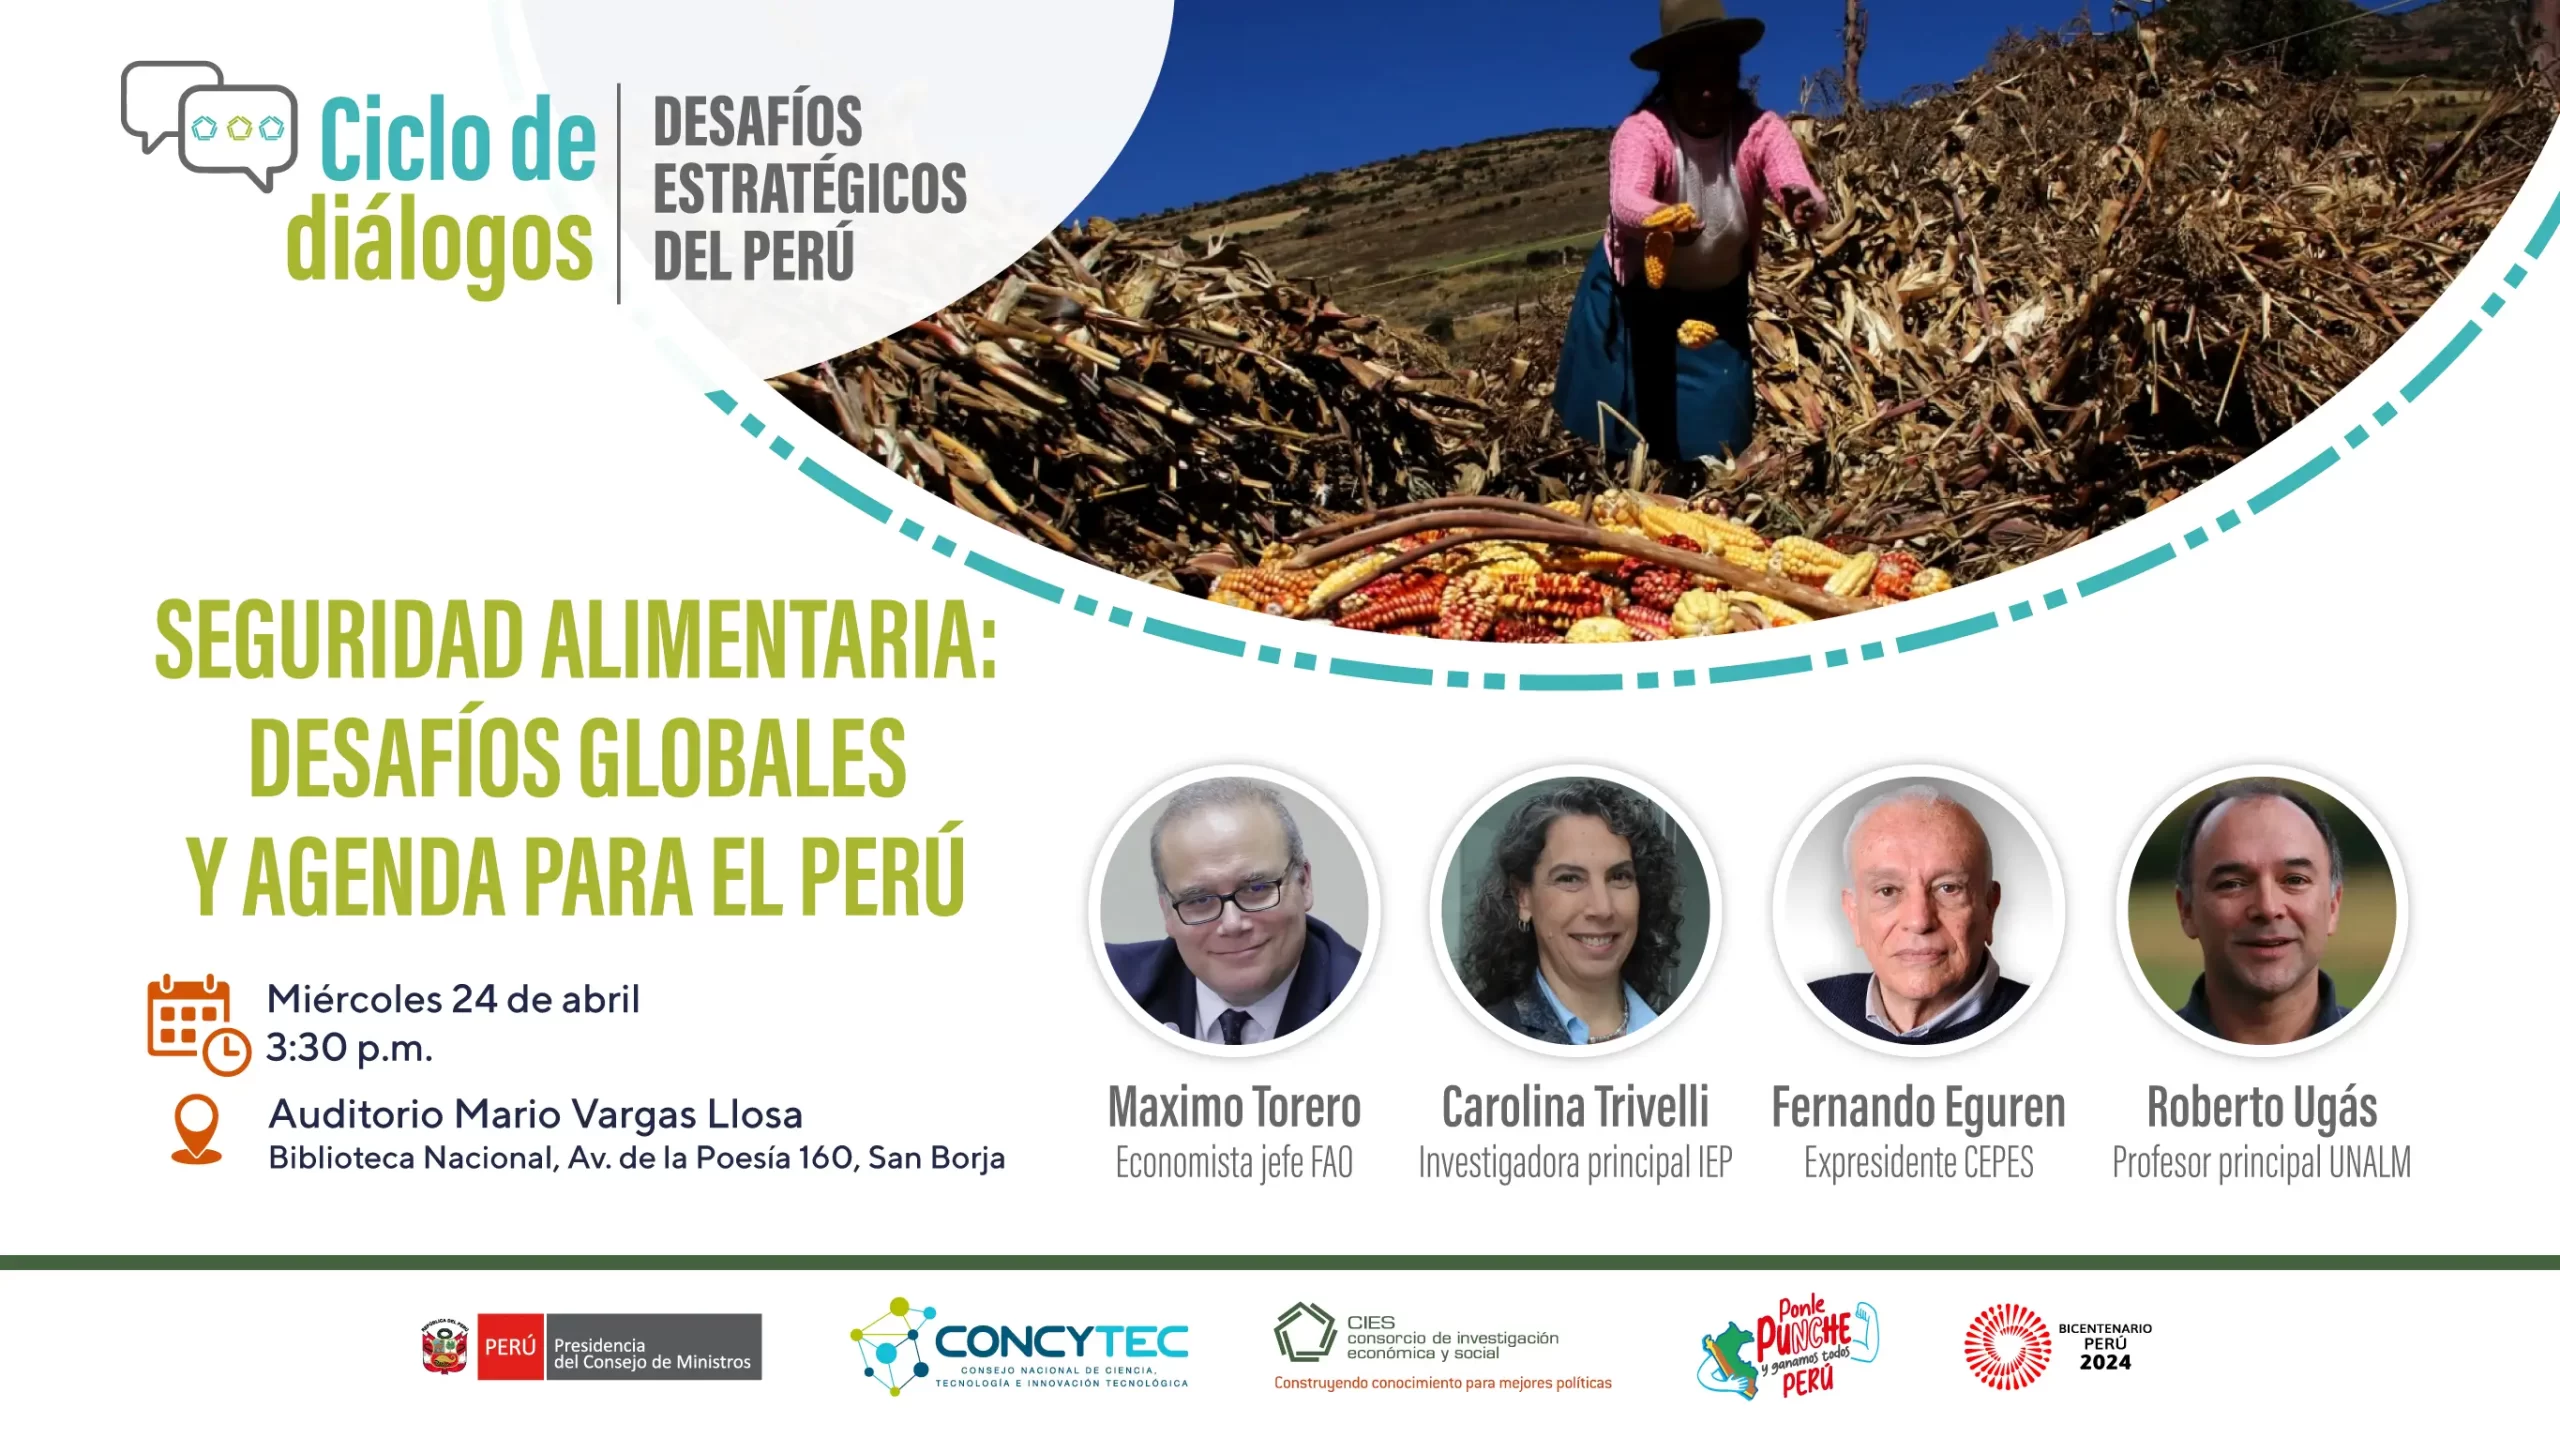 CIES y CONCYTEC inician ciclo de diálogos sobre desafíos estratégicos en Perú